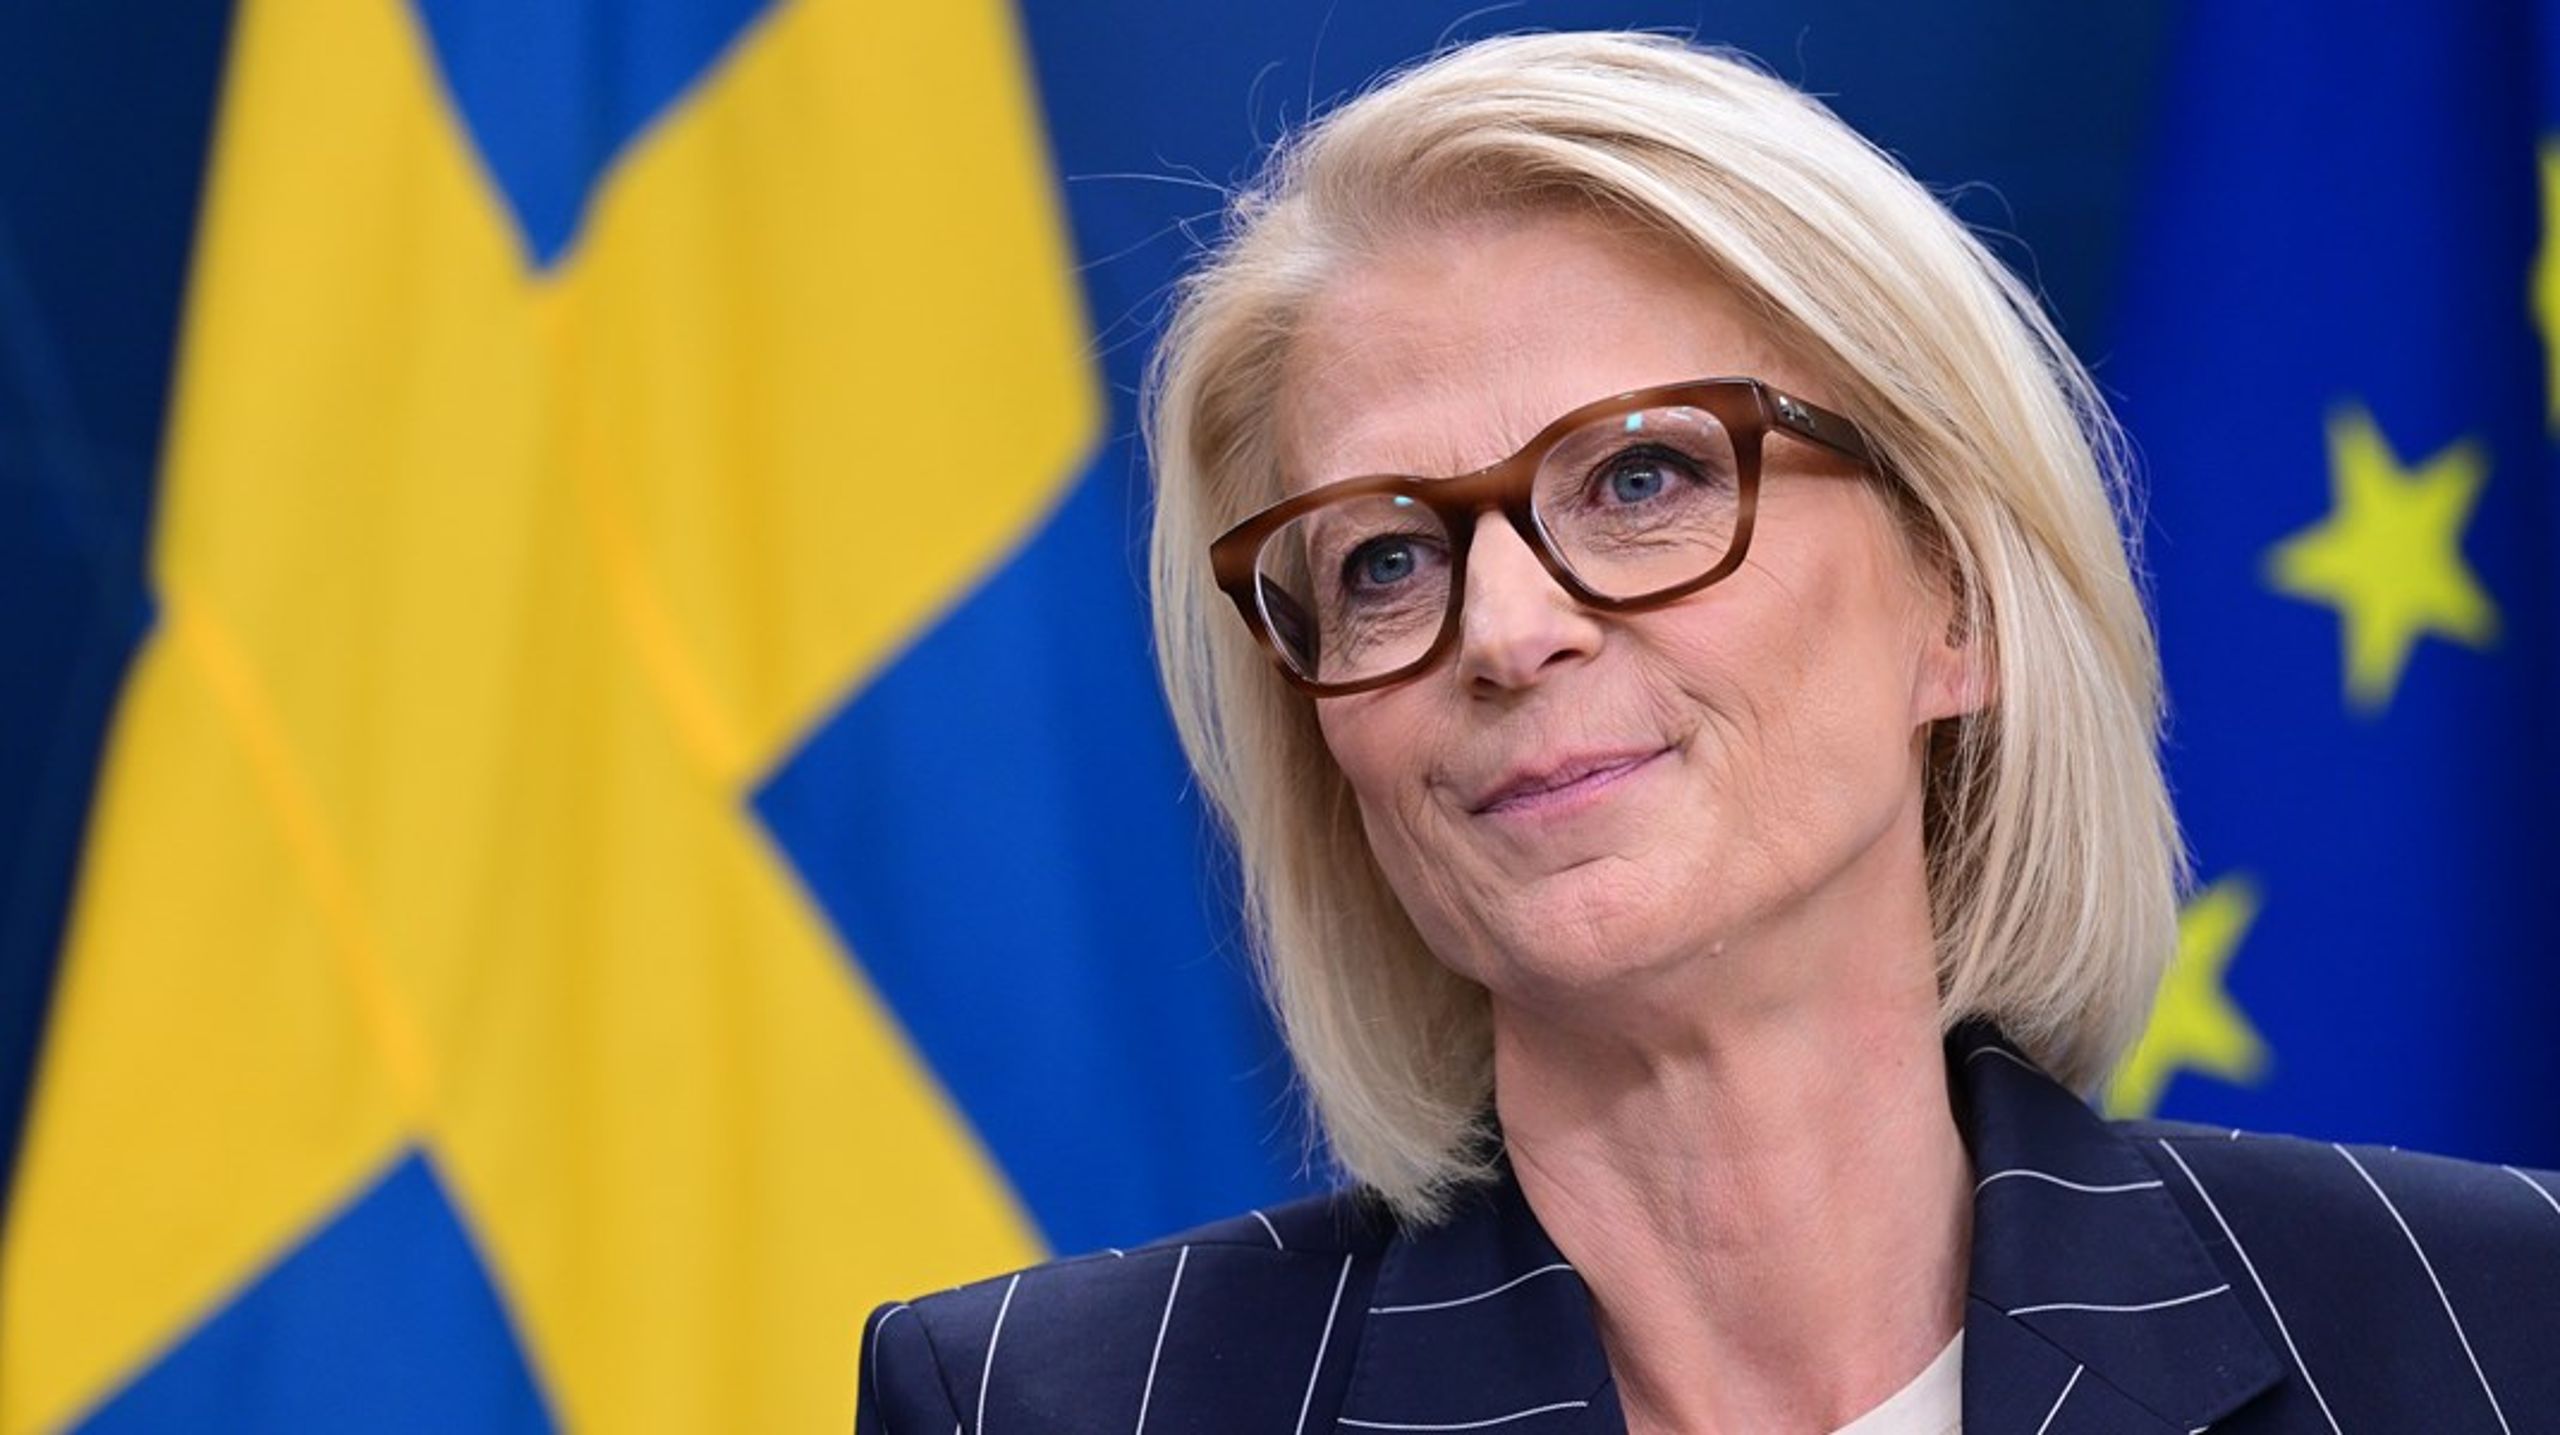 Finansminister Elisabeth Svantesson (M) har uppmanat kommuner och regioner att bryta mot lagen, anser Socialdemokraterna.